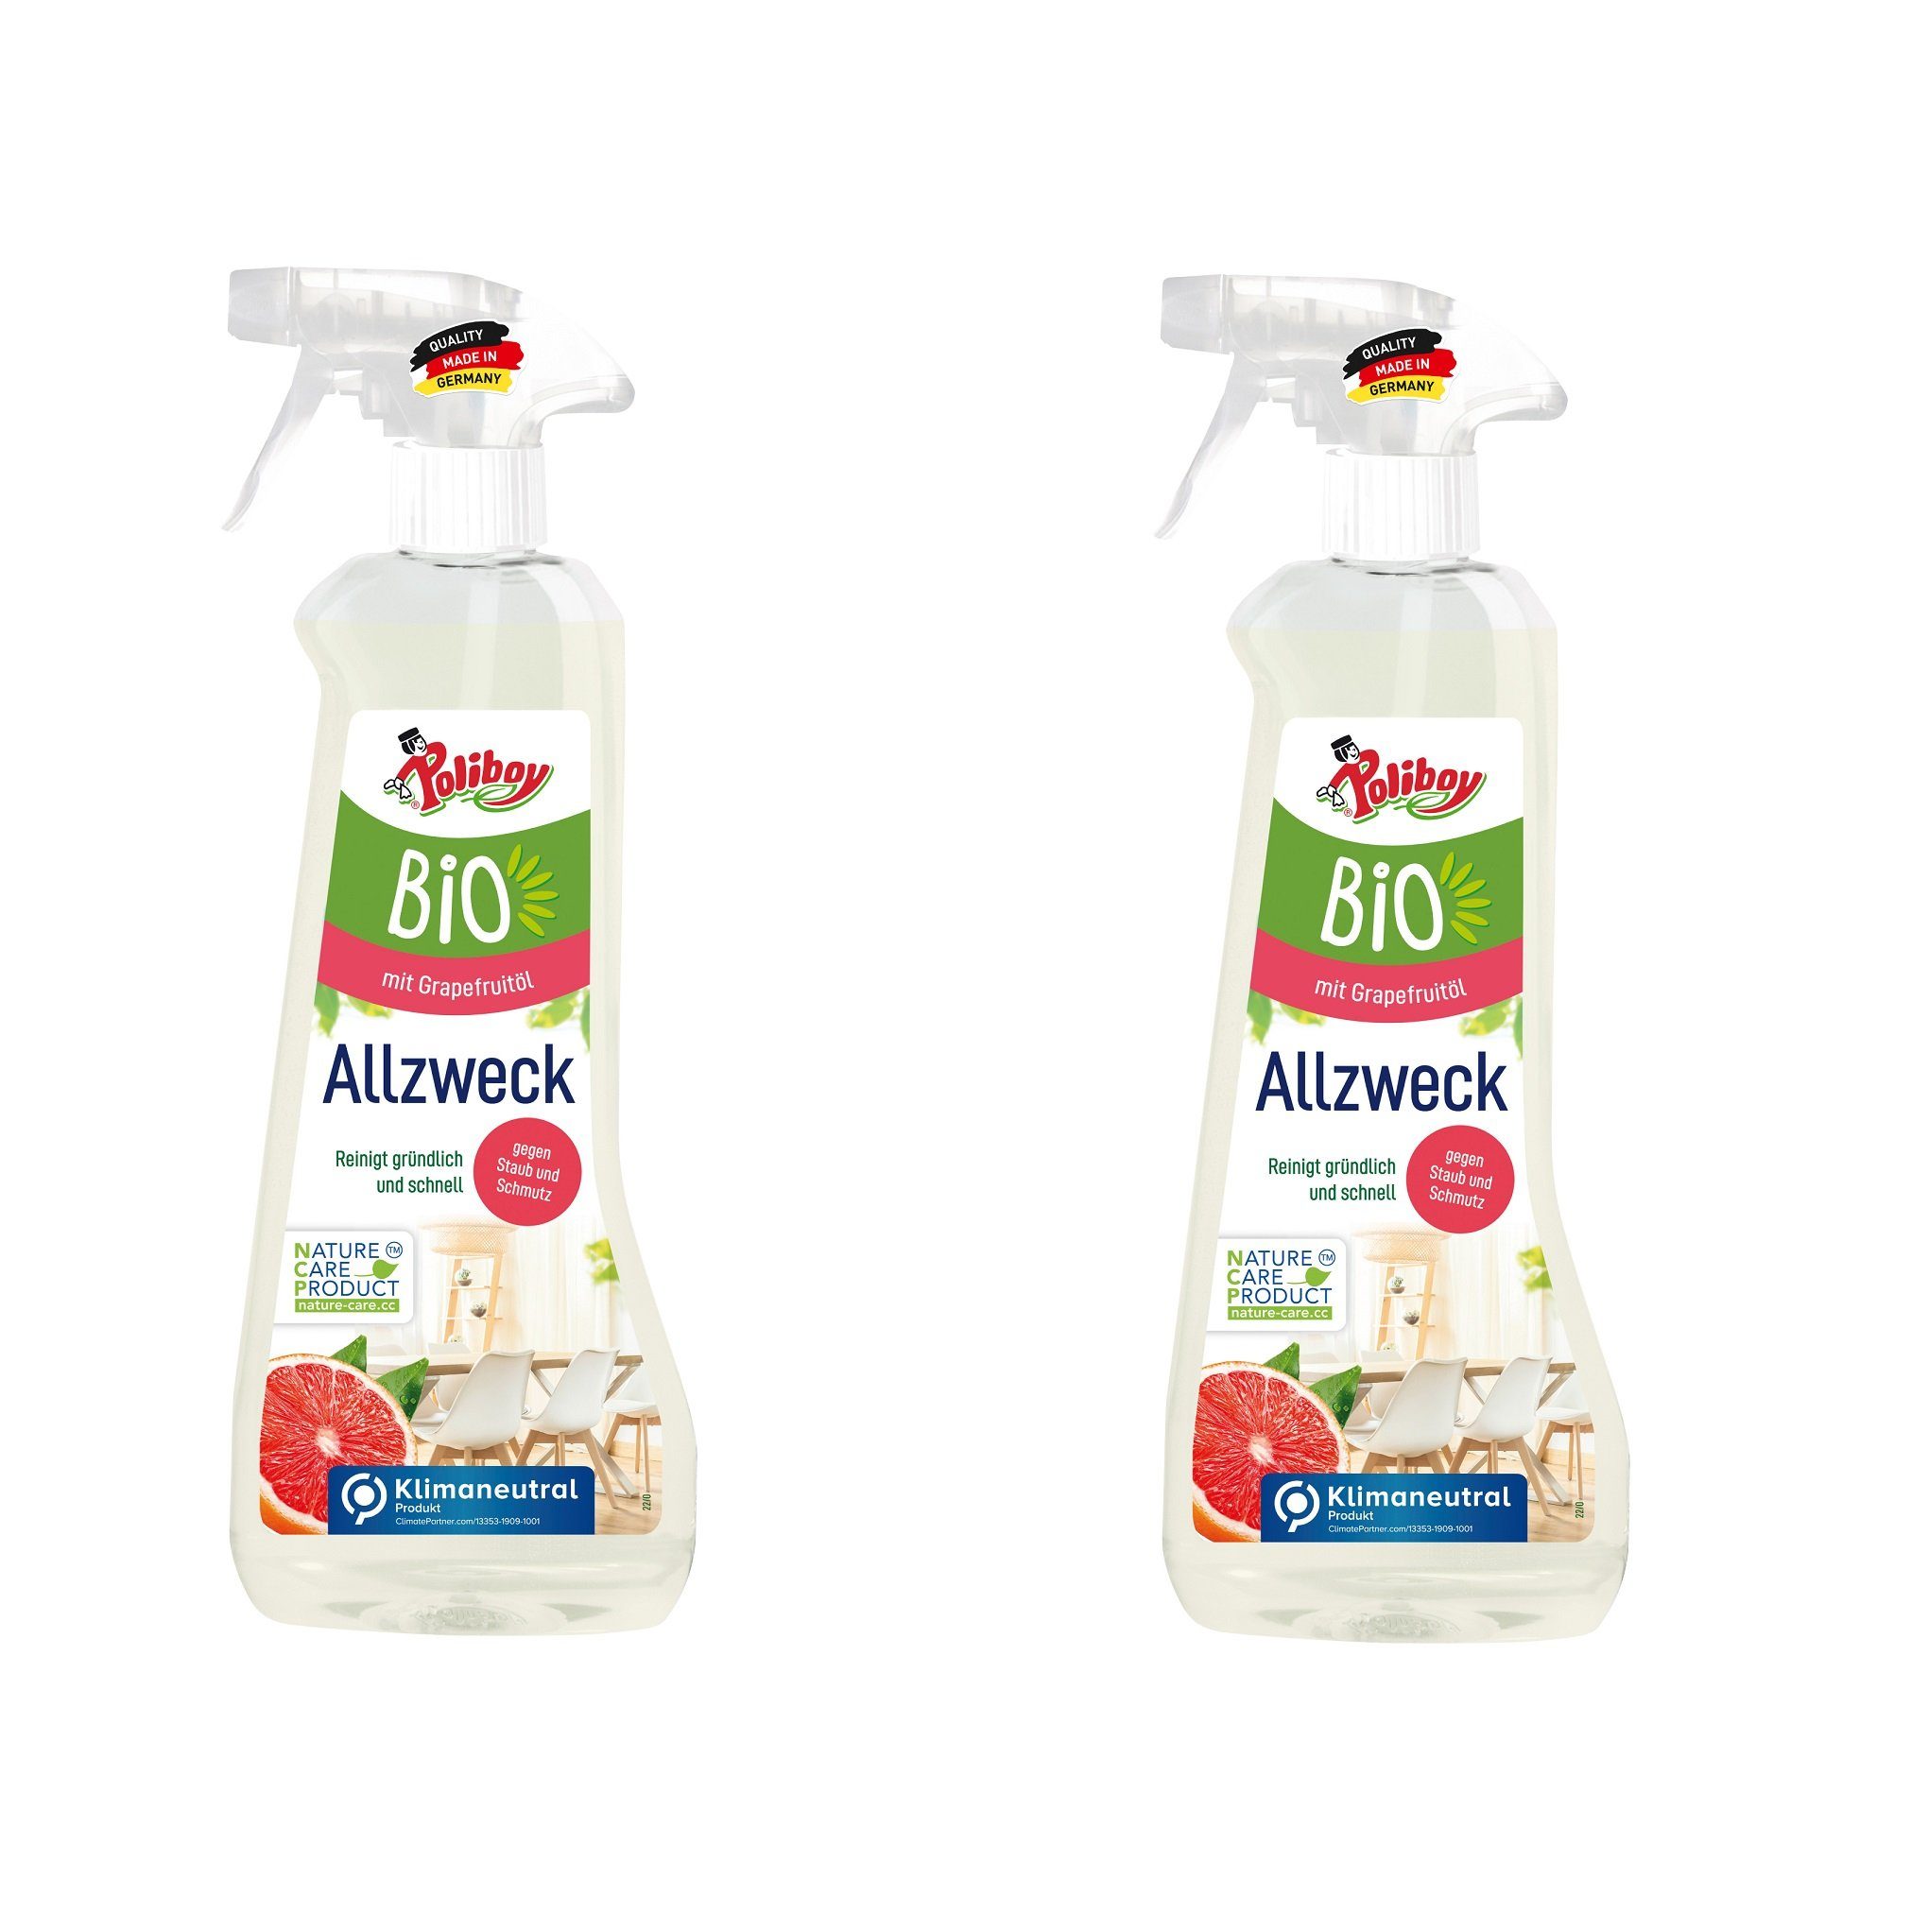 poliboy - 500 ml - Bio Allzweckreiniger (für alle Oberflächen und Holzarten - Made in Germany)